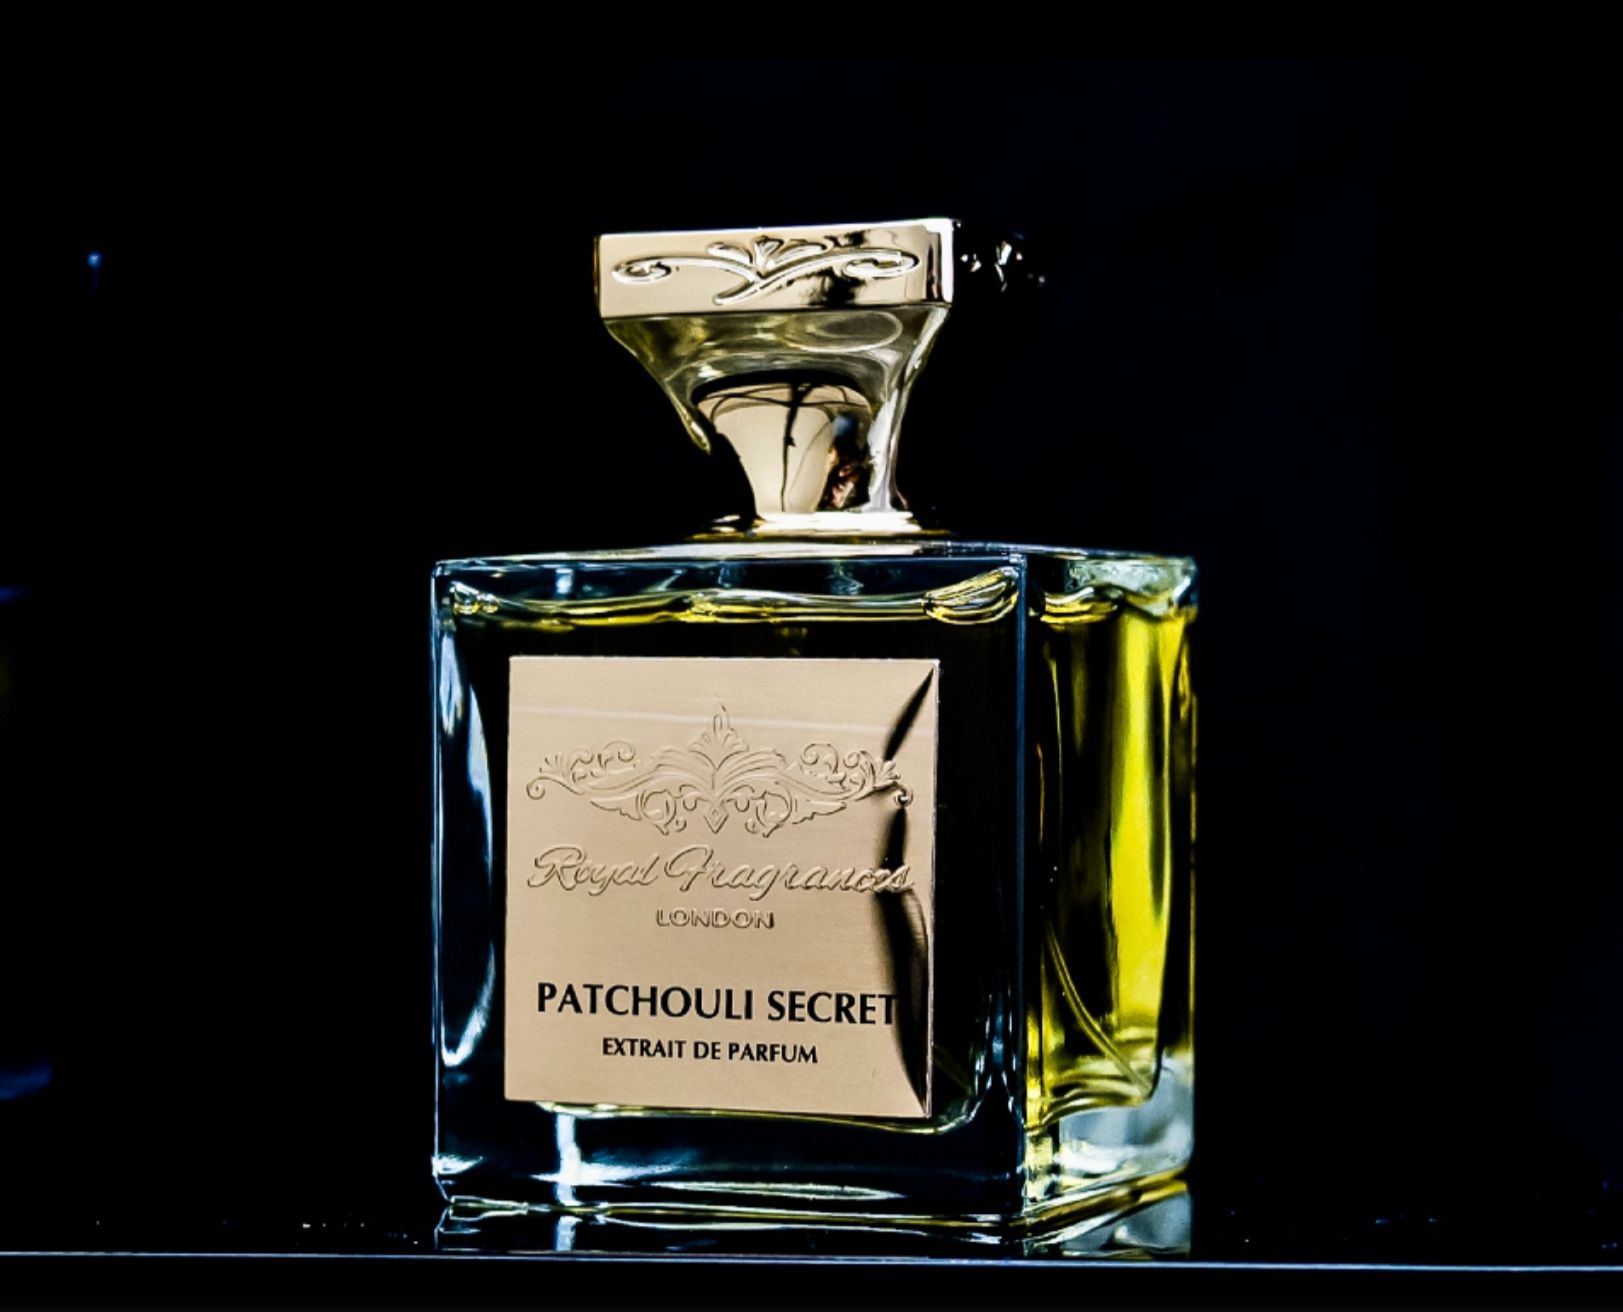 Patchouli Secret - Royal Fragrances London - Gallery 1